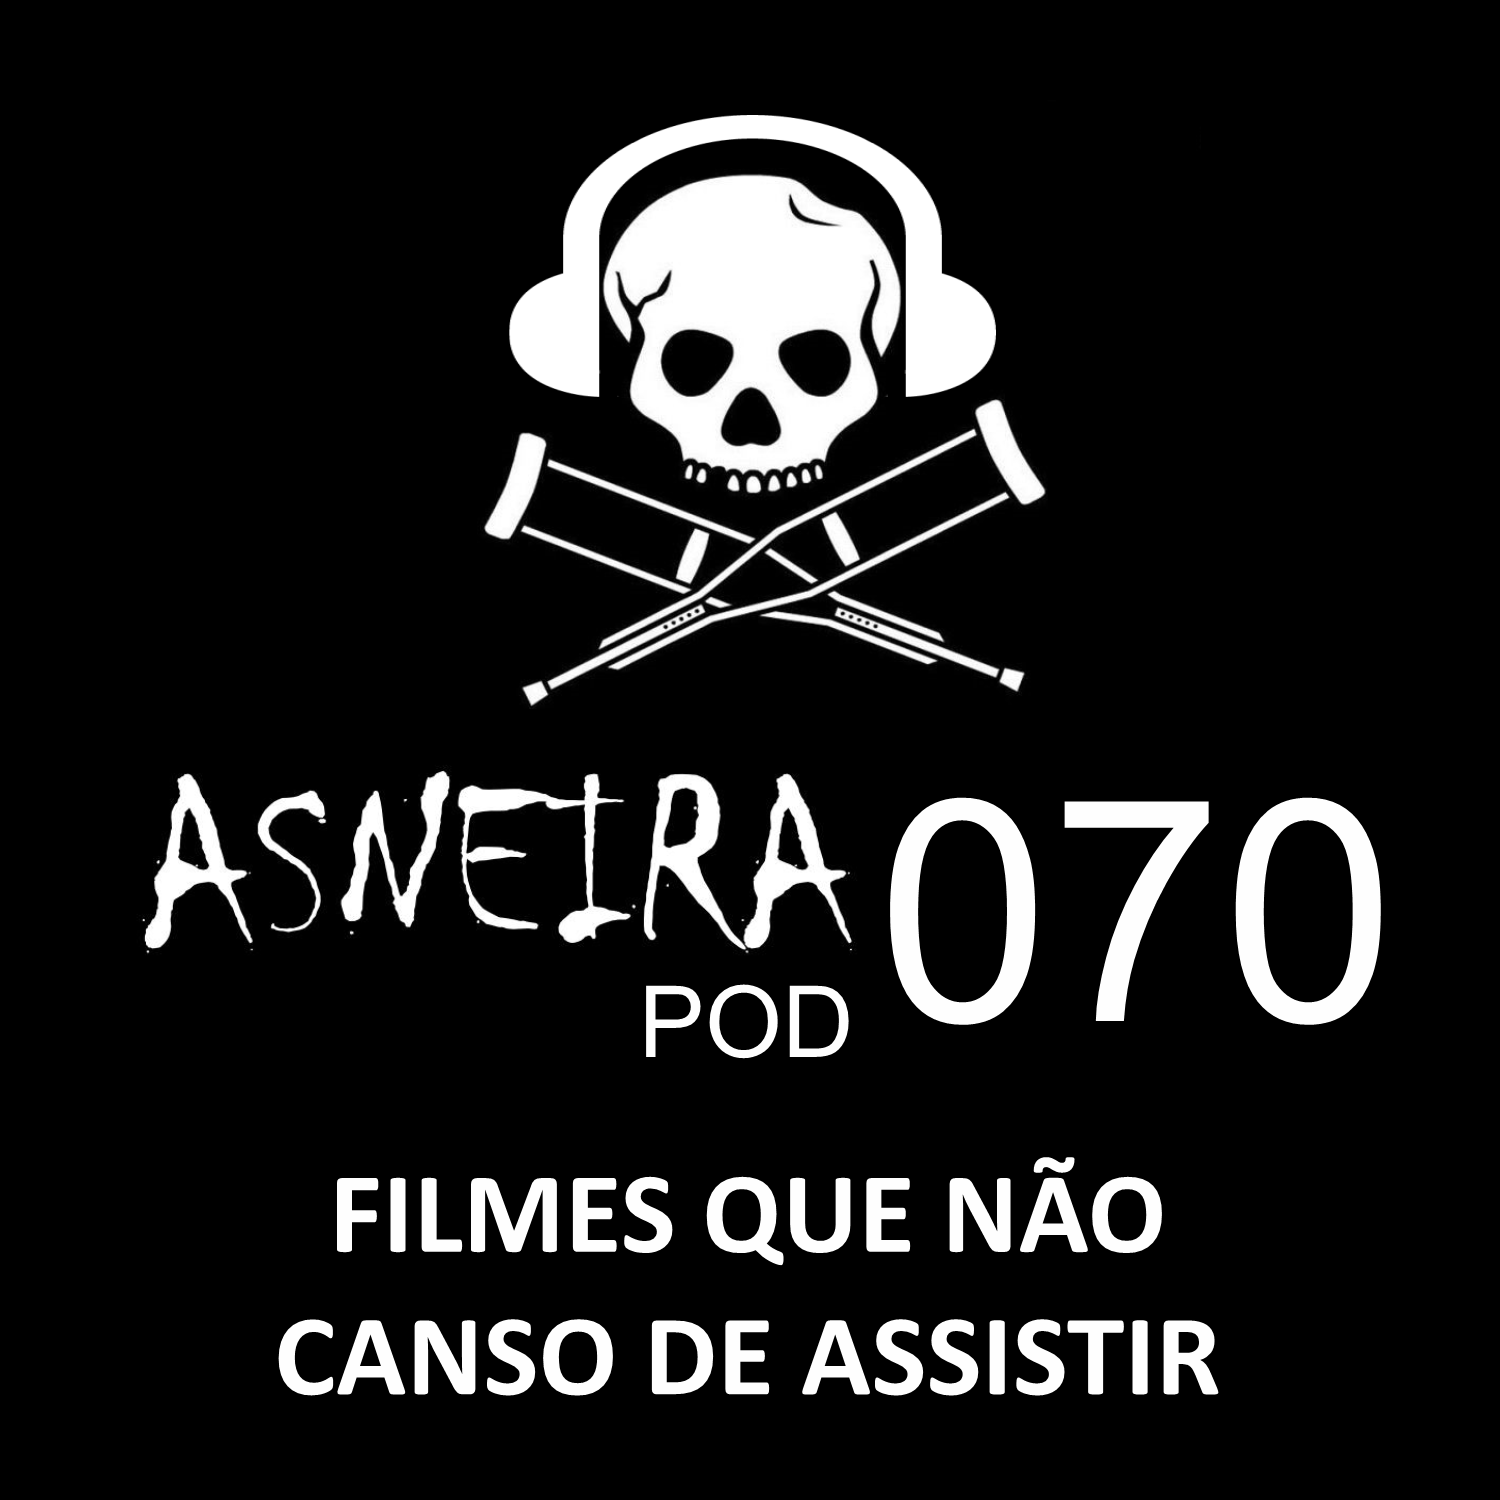 AsneiraPOD 070 – Filmes que não canso de assistir